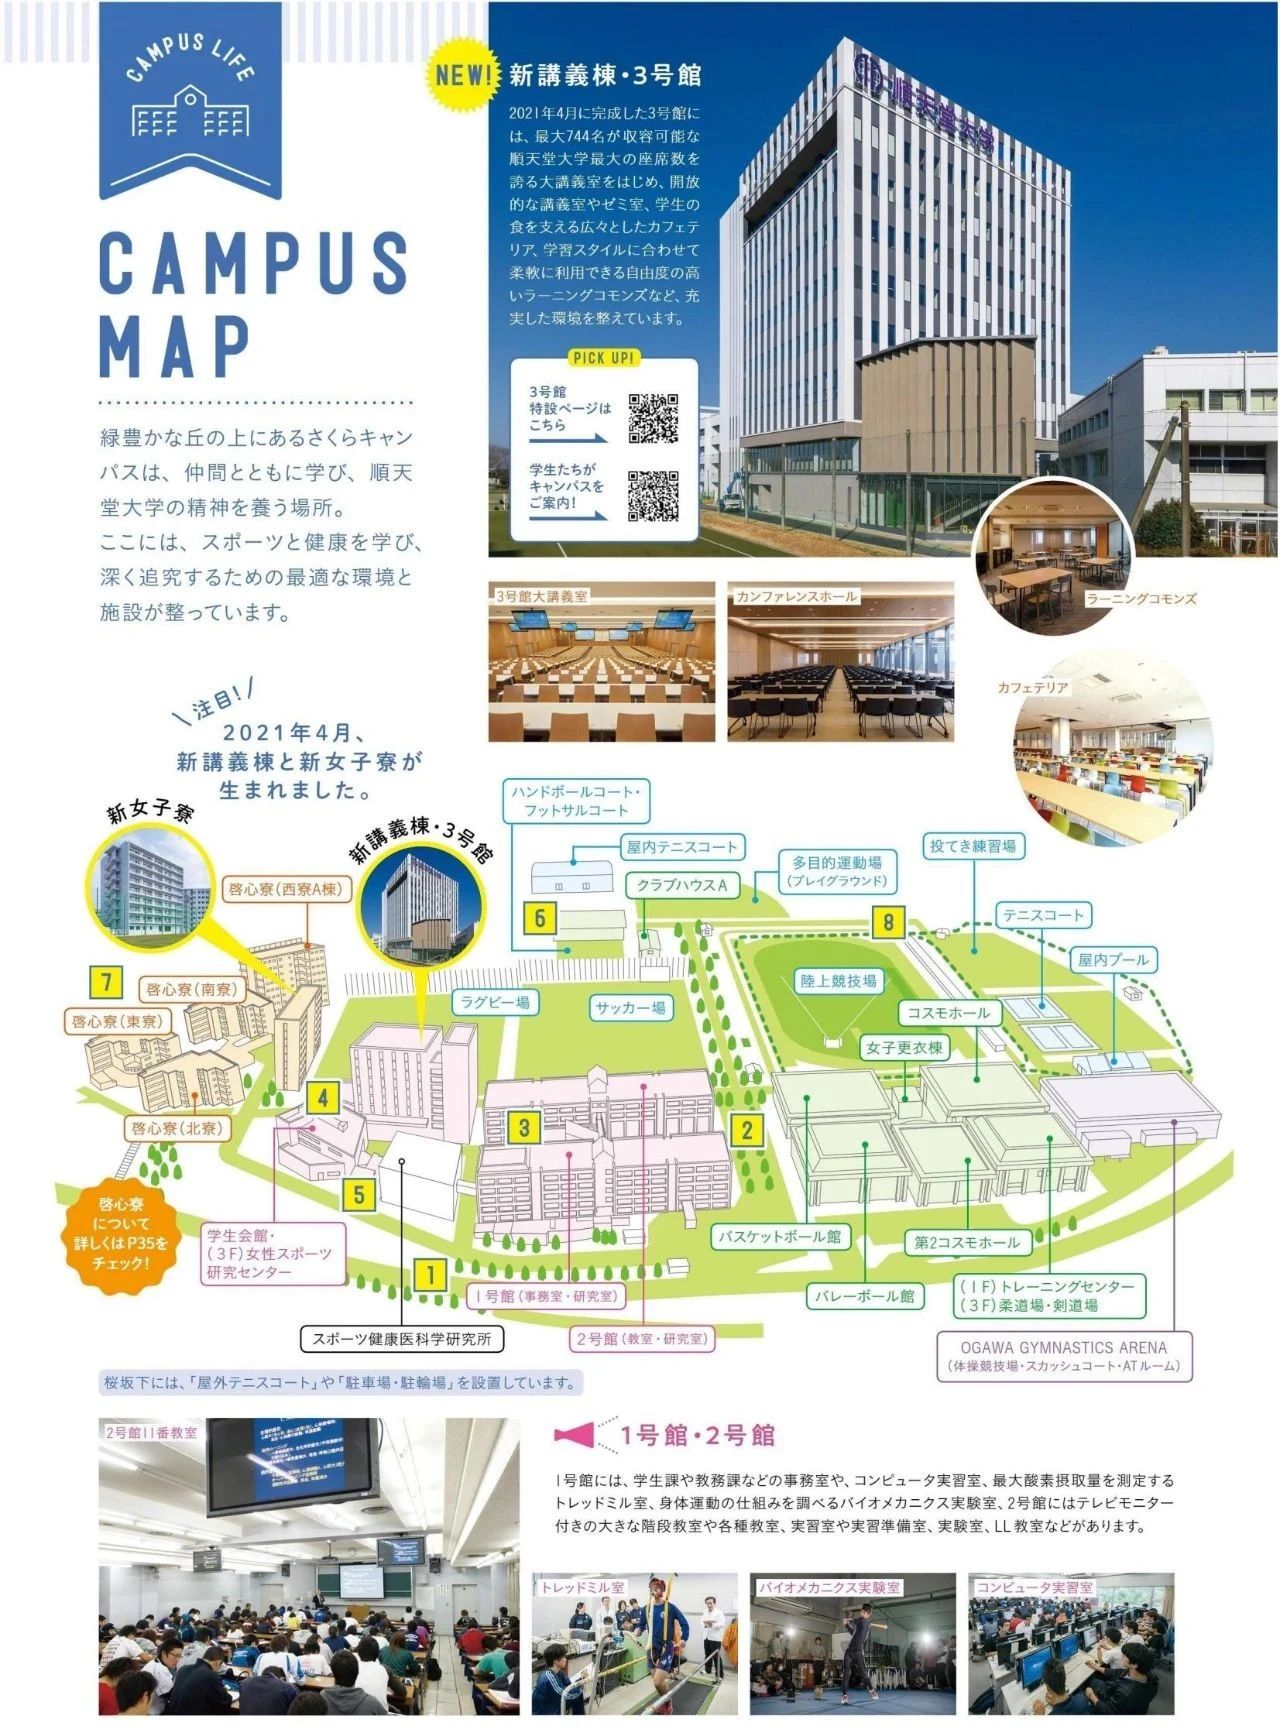 共立日语学院/顺天堂大学